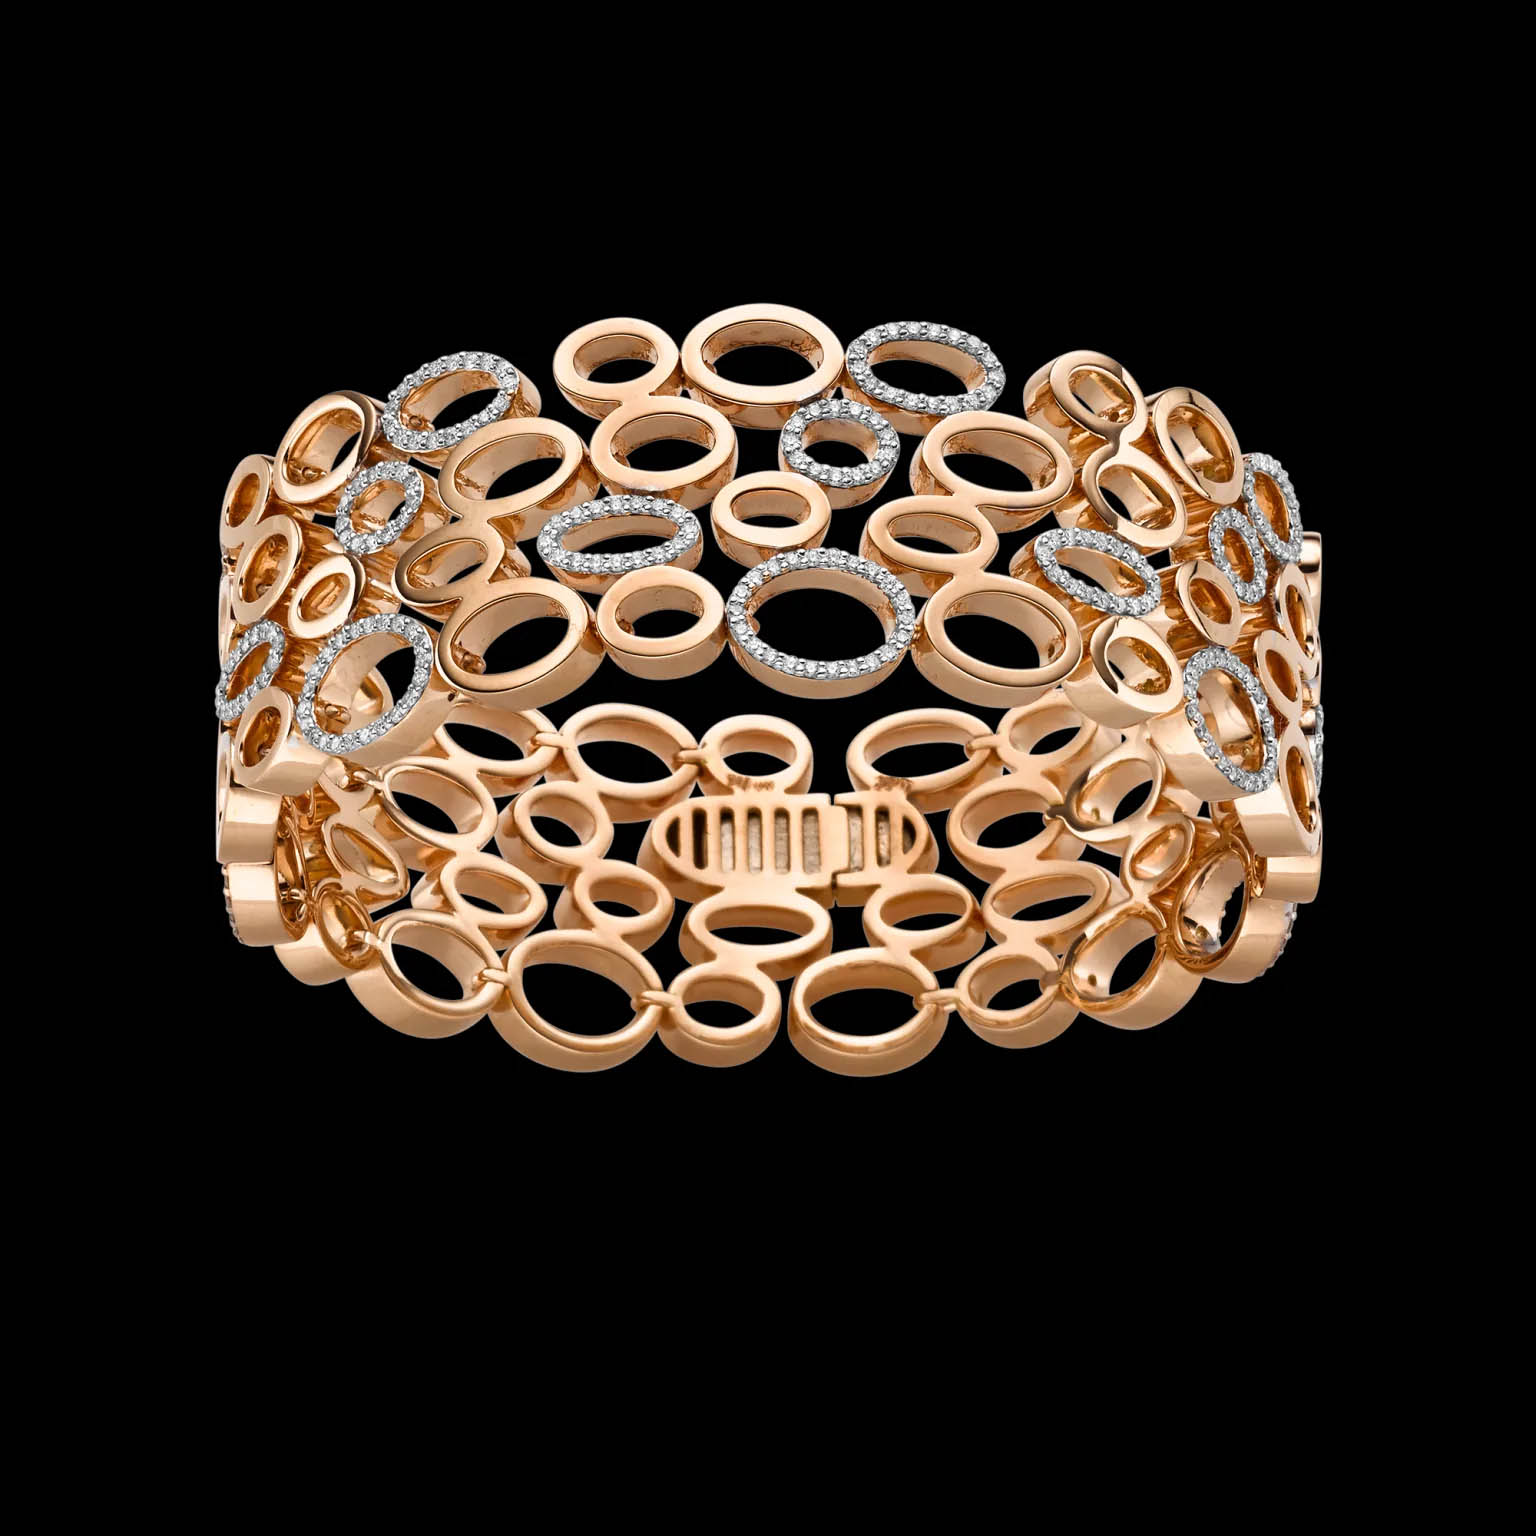 Grosir OEM/ODM Perhiasan Membuat gelang perak produsen perhiasan berlapis emas khusus